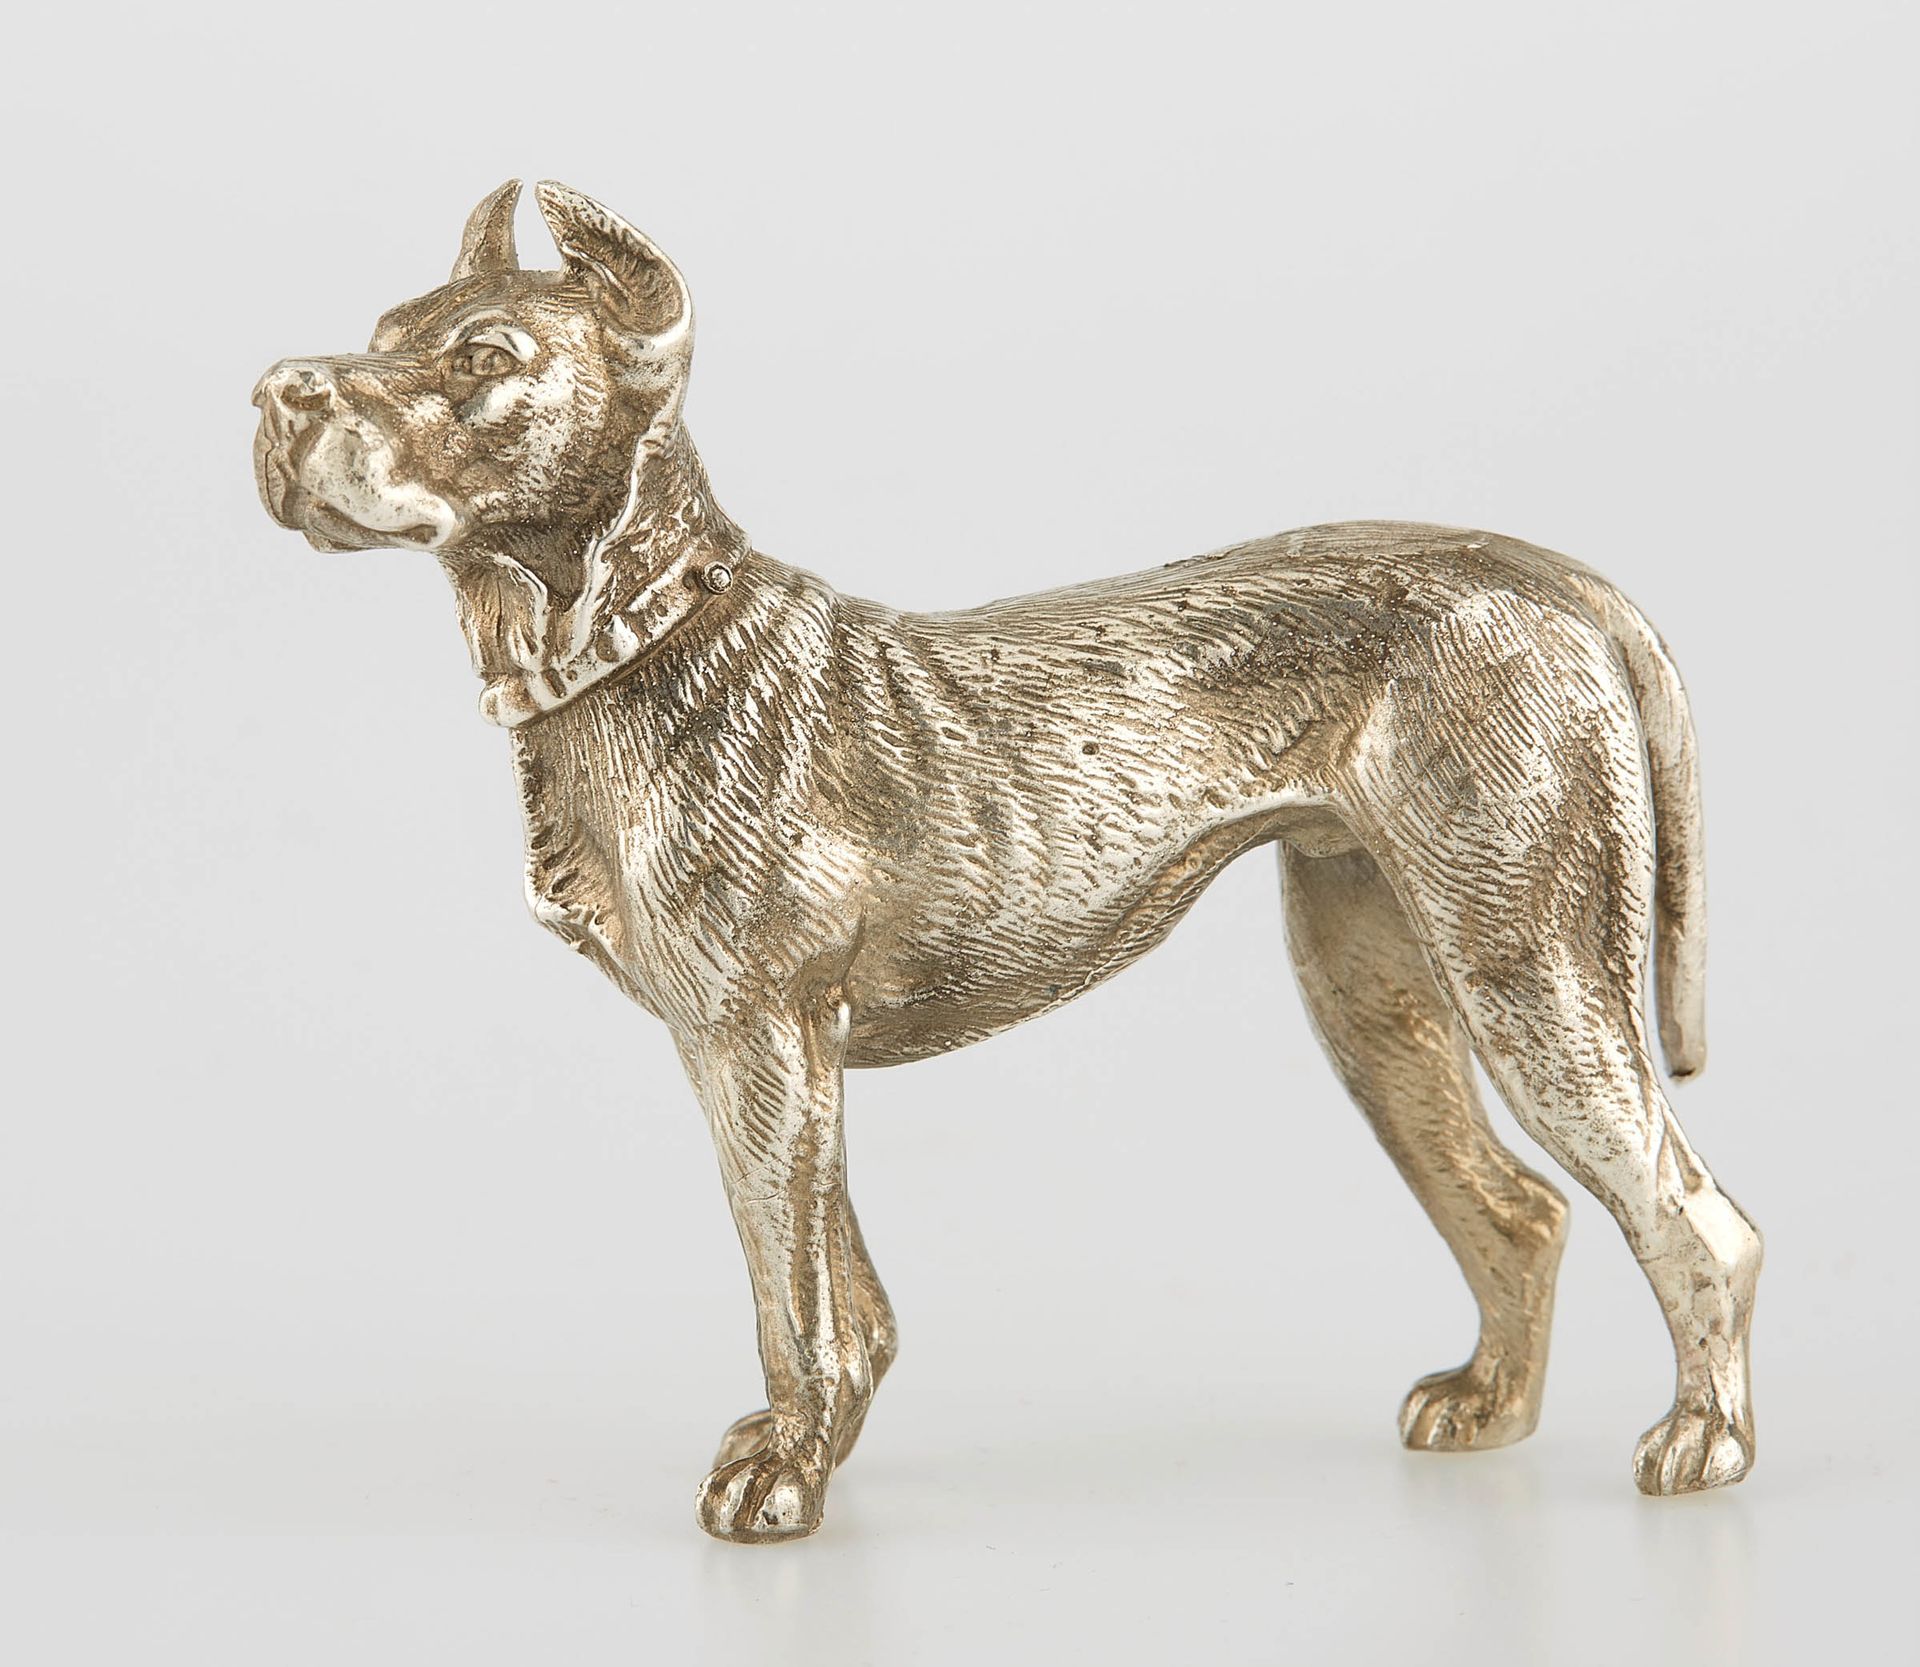 Null 代表一只站立的狗的银质主题。Minerve的标志。高度：6.8厘米。高度：6.8厘米。长度：8厘米。重量：210克。